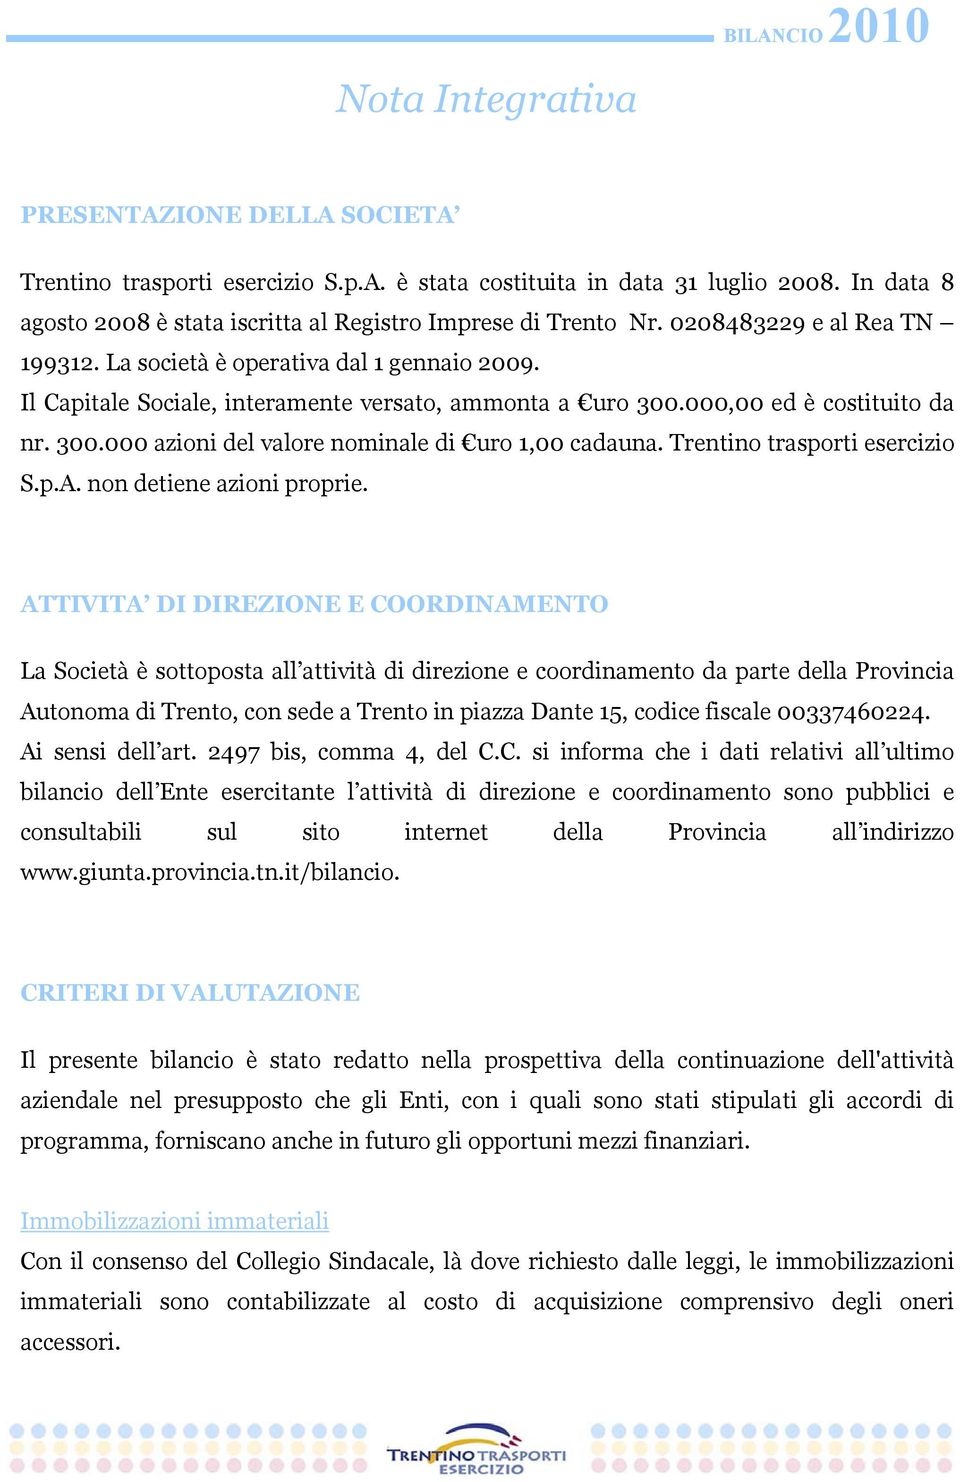 Trentino trasporti esercizio S.p.A. non detiene azioni proprie.